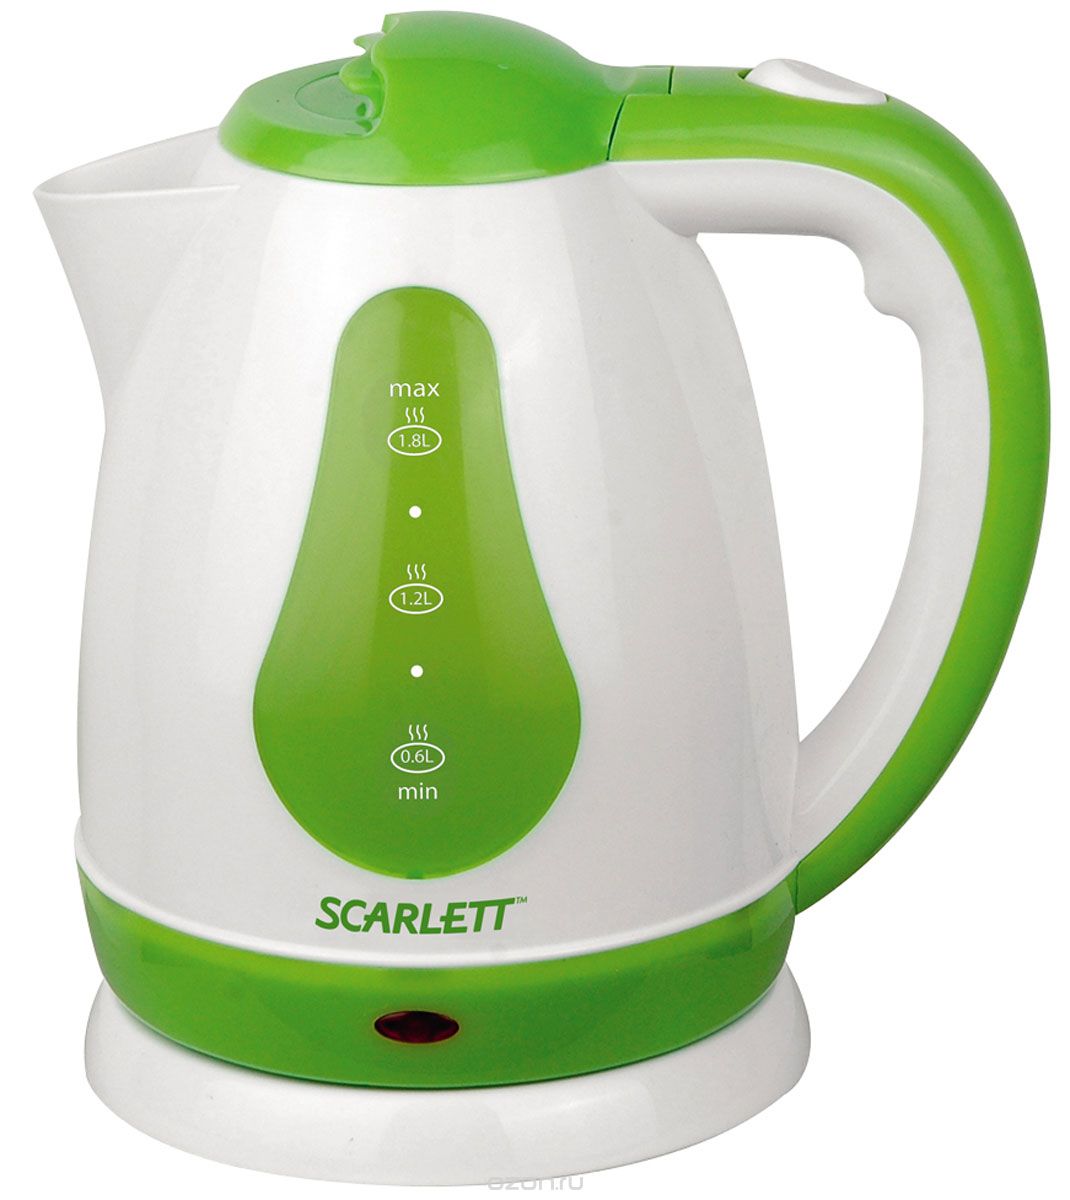   Scarlett SC-EK18P30, White Green